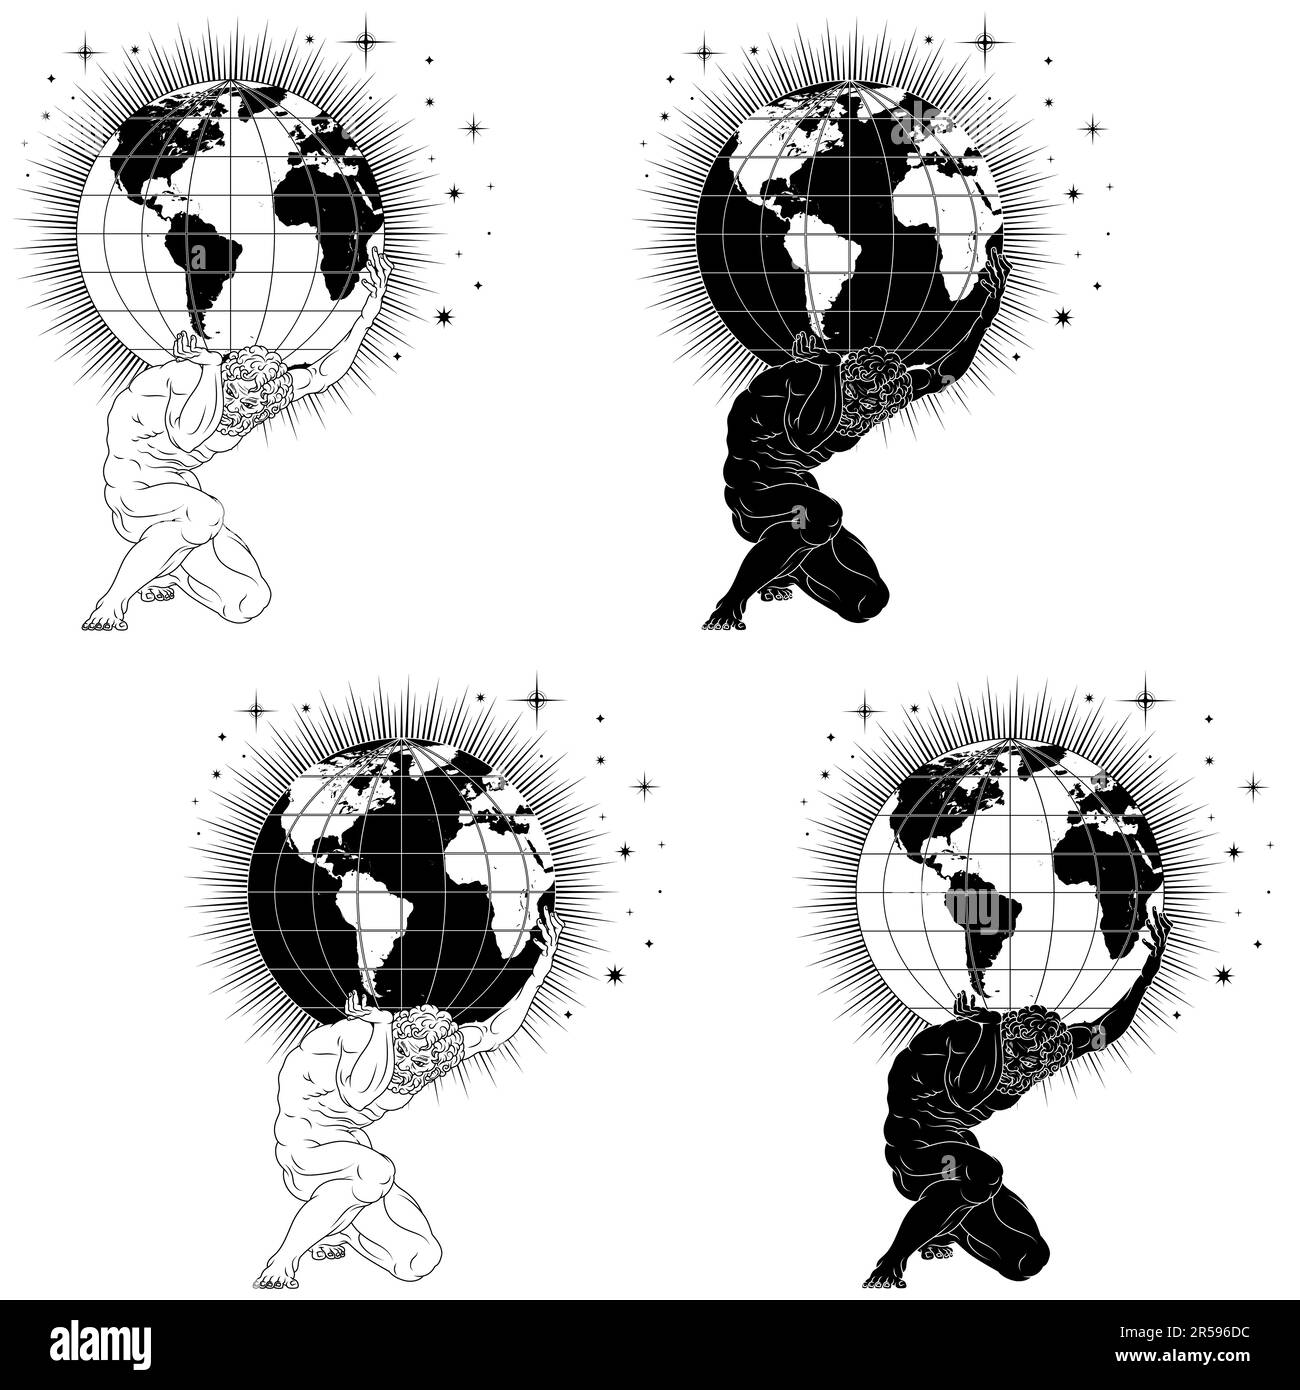 Conception vectorielle de titan Atlas tenant la terre de la planète sur ses épaules, titan de la mythologie grecque tenant la sphère de la terre avec le fond étoilé Illustration de Vecteur